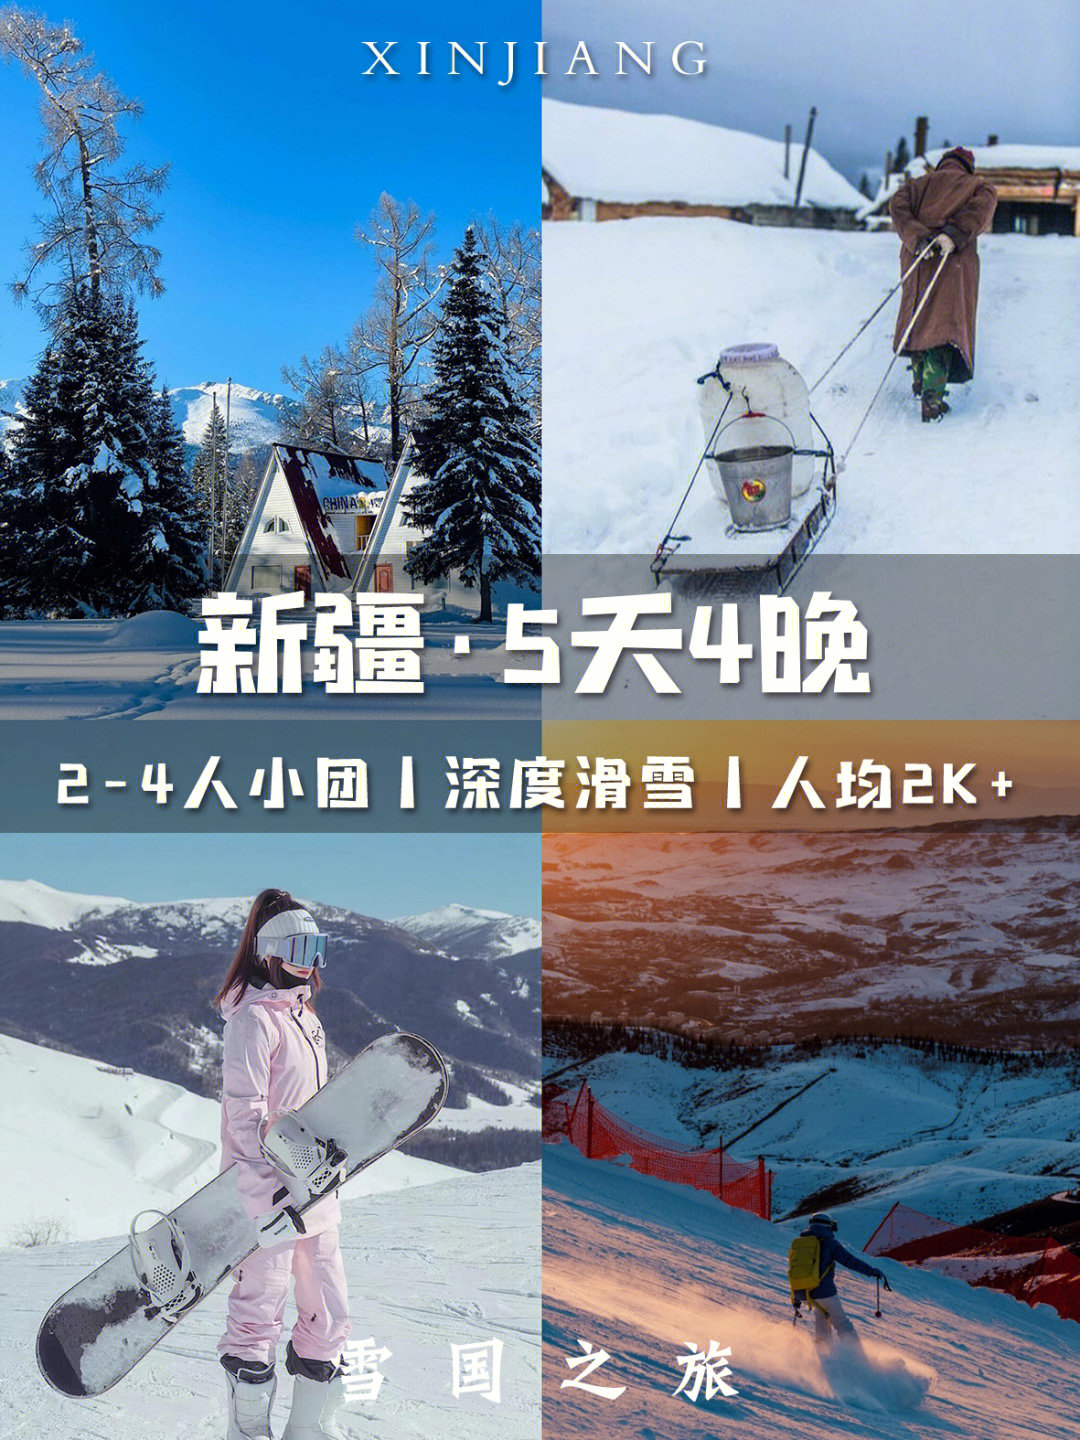 人均2k佳新疆双滑雪喀纳斯77禾木纯玩小团